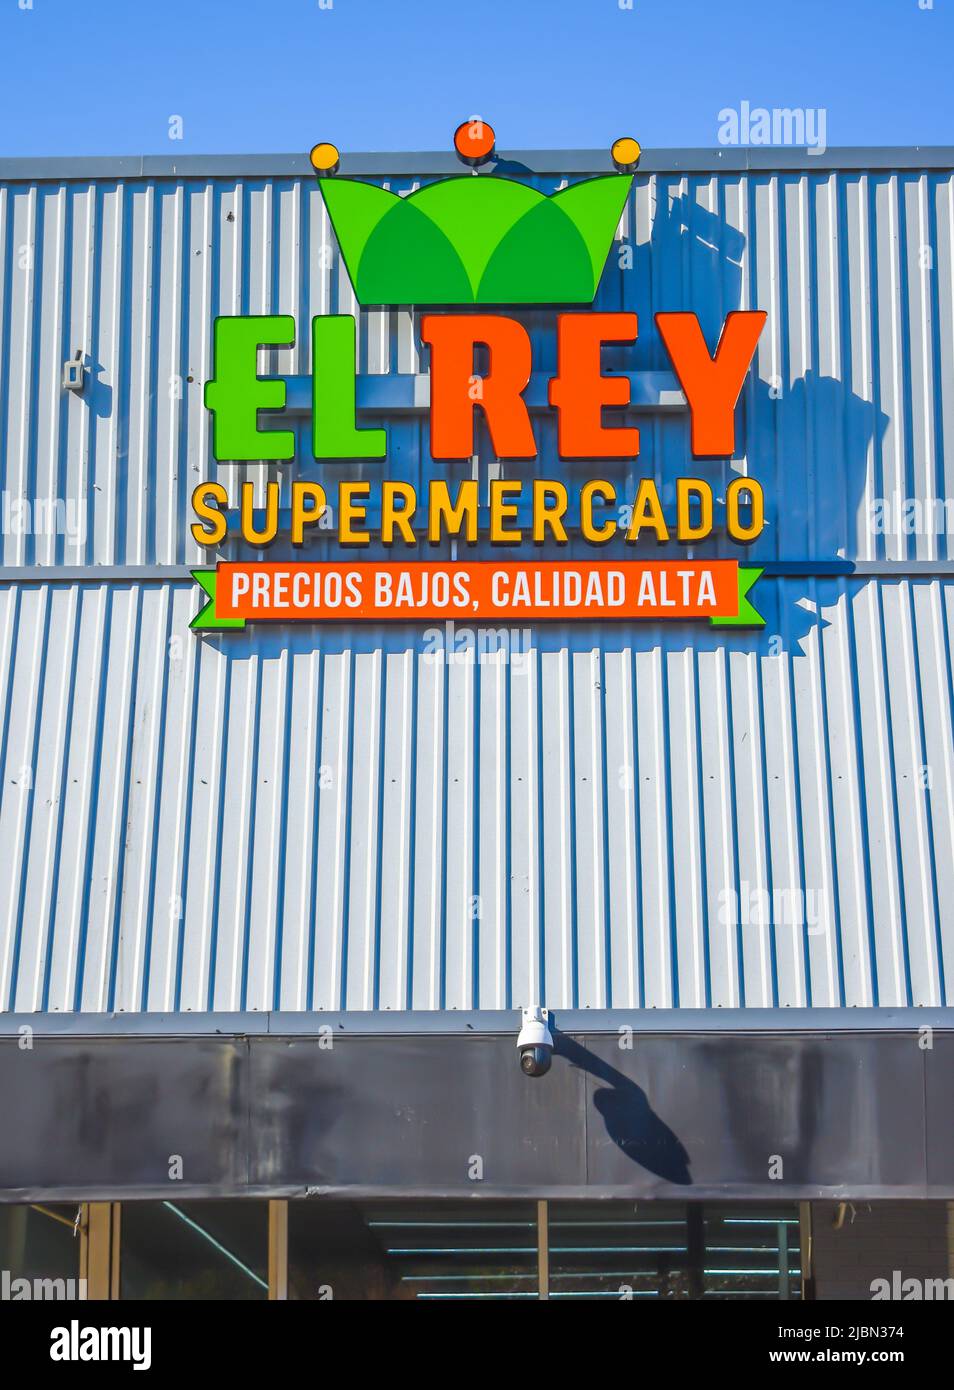 Facciata esterna del supermercato El Rey marchio e logo in verde e arancione contro un tetto bianco, in metallo costellato con un cielo chiaro blu luminoso. Foto Stock